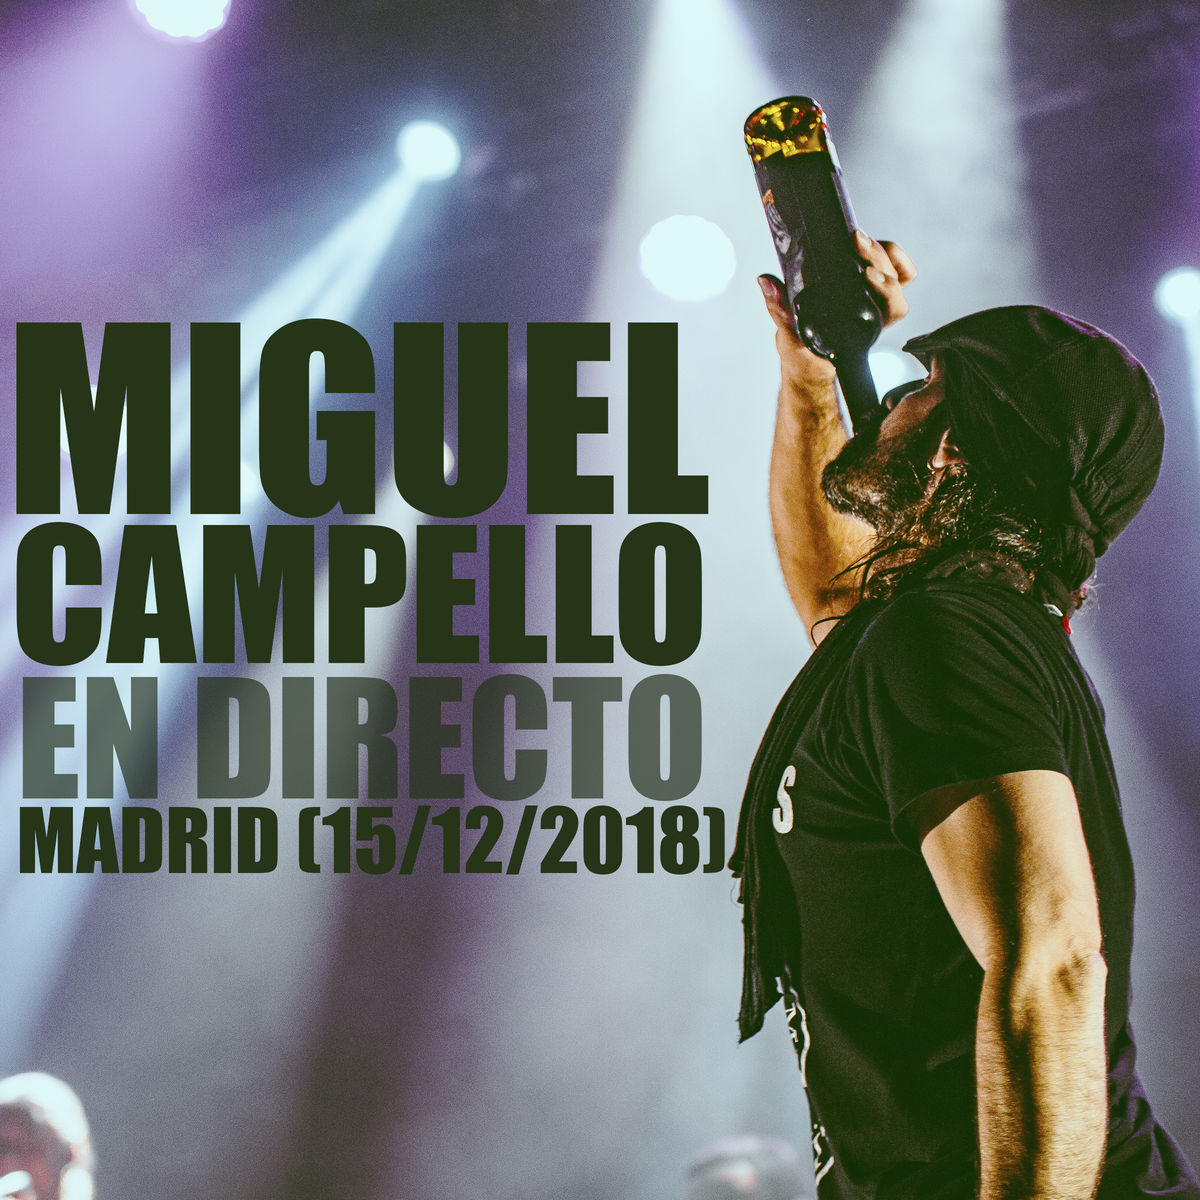 Miguel Campello en directo